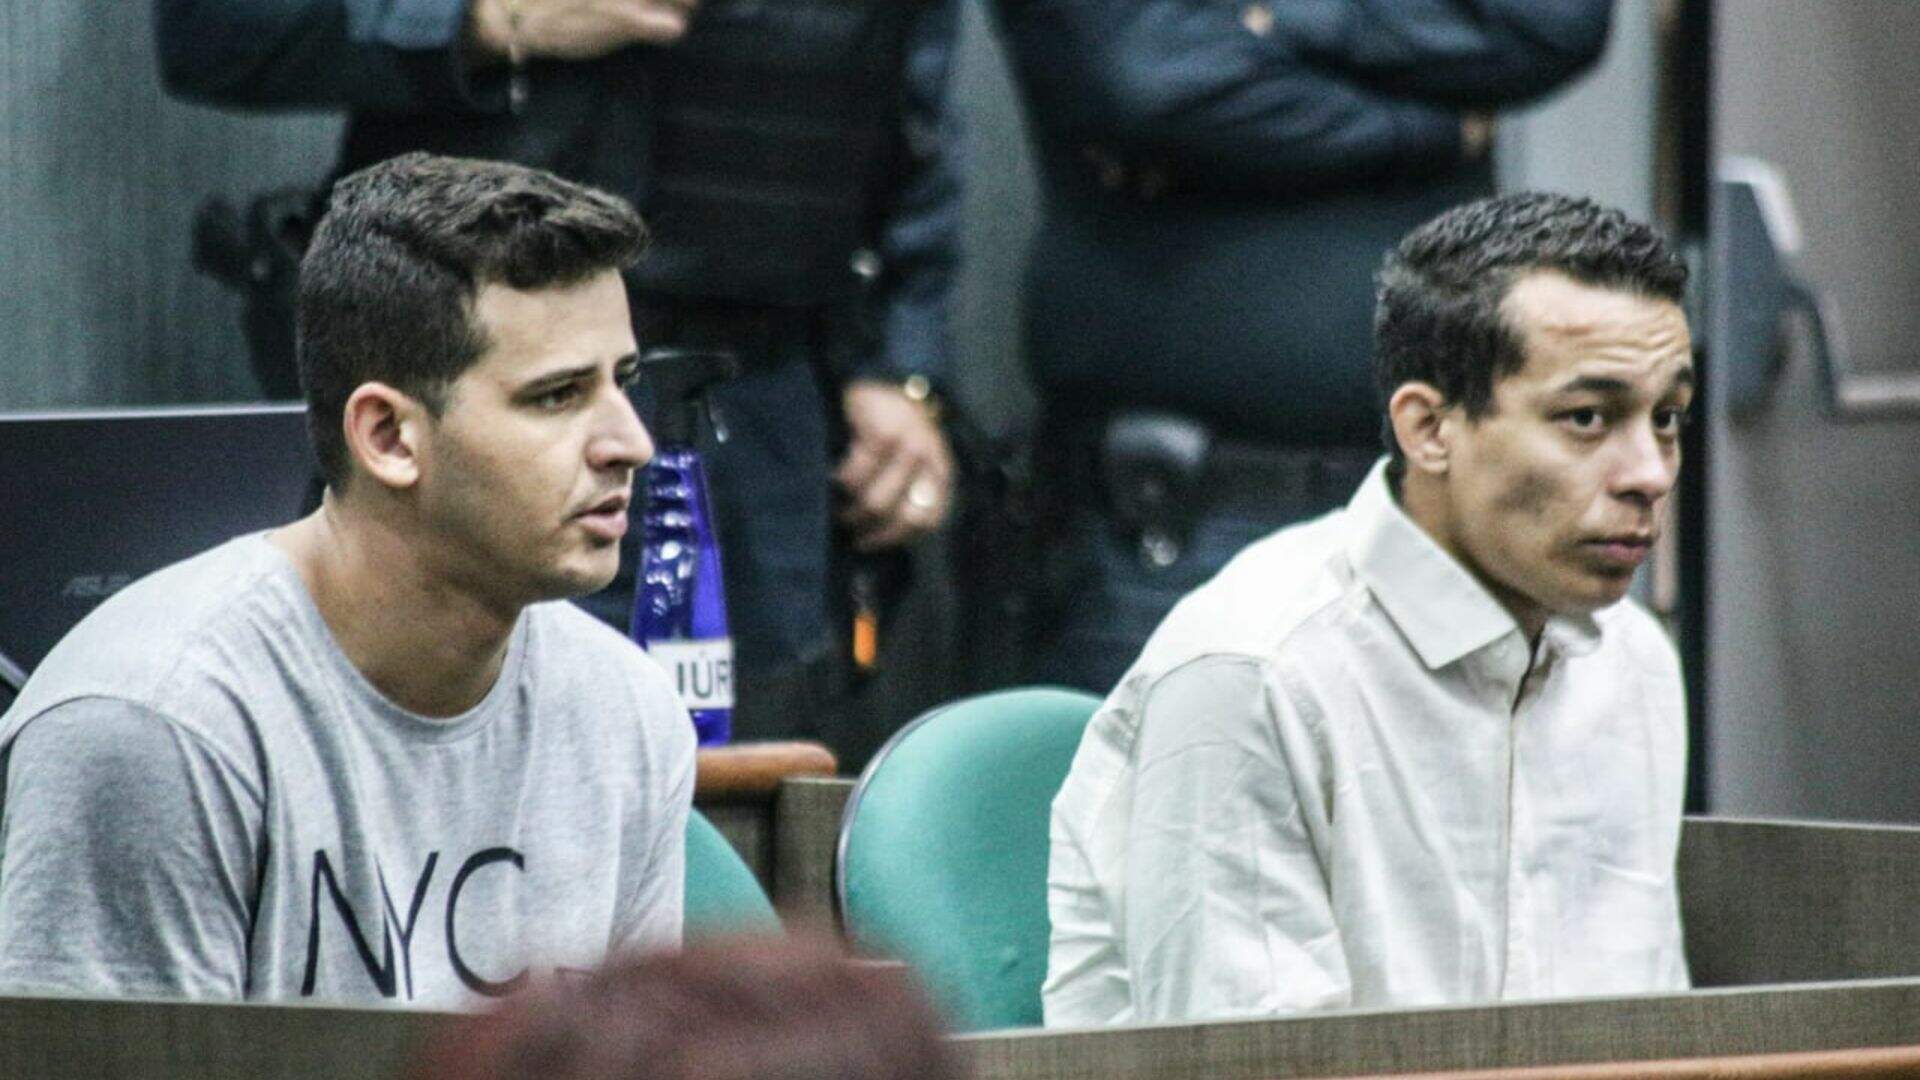 Em julgamento, dupla nega participação em execução de Luiz Felipe em disputa por tráfico há 2 anos